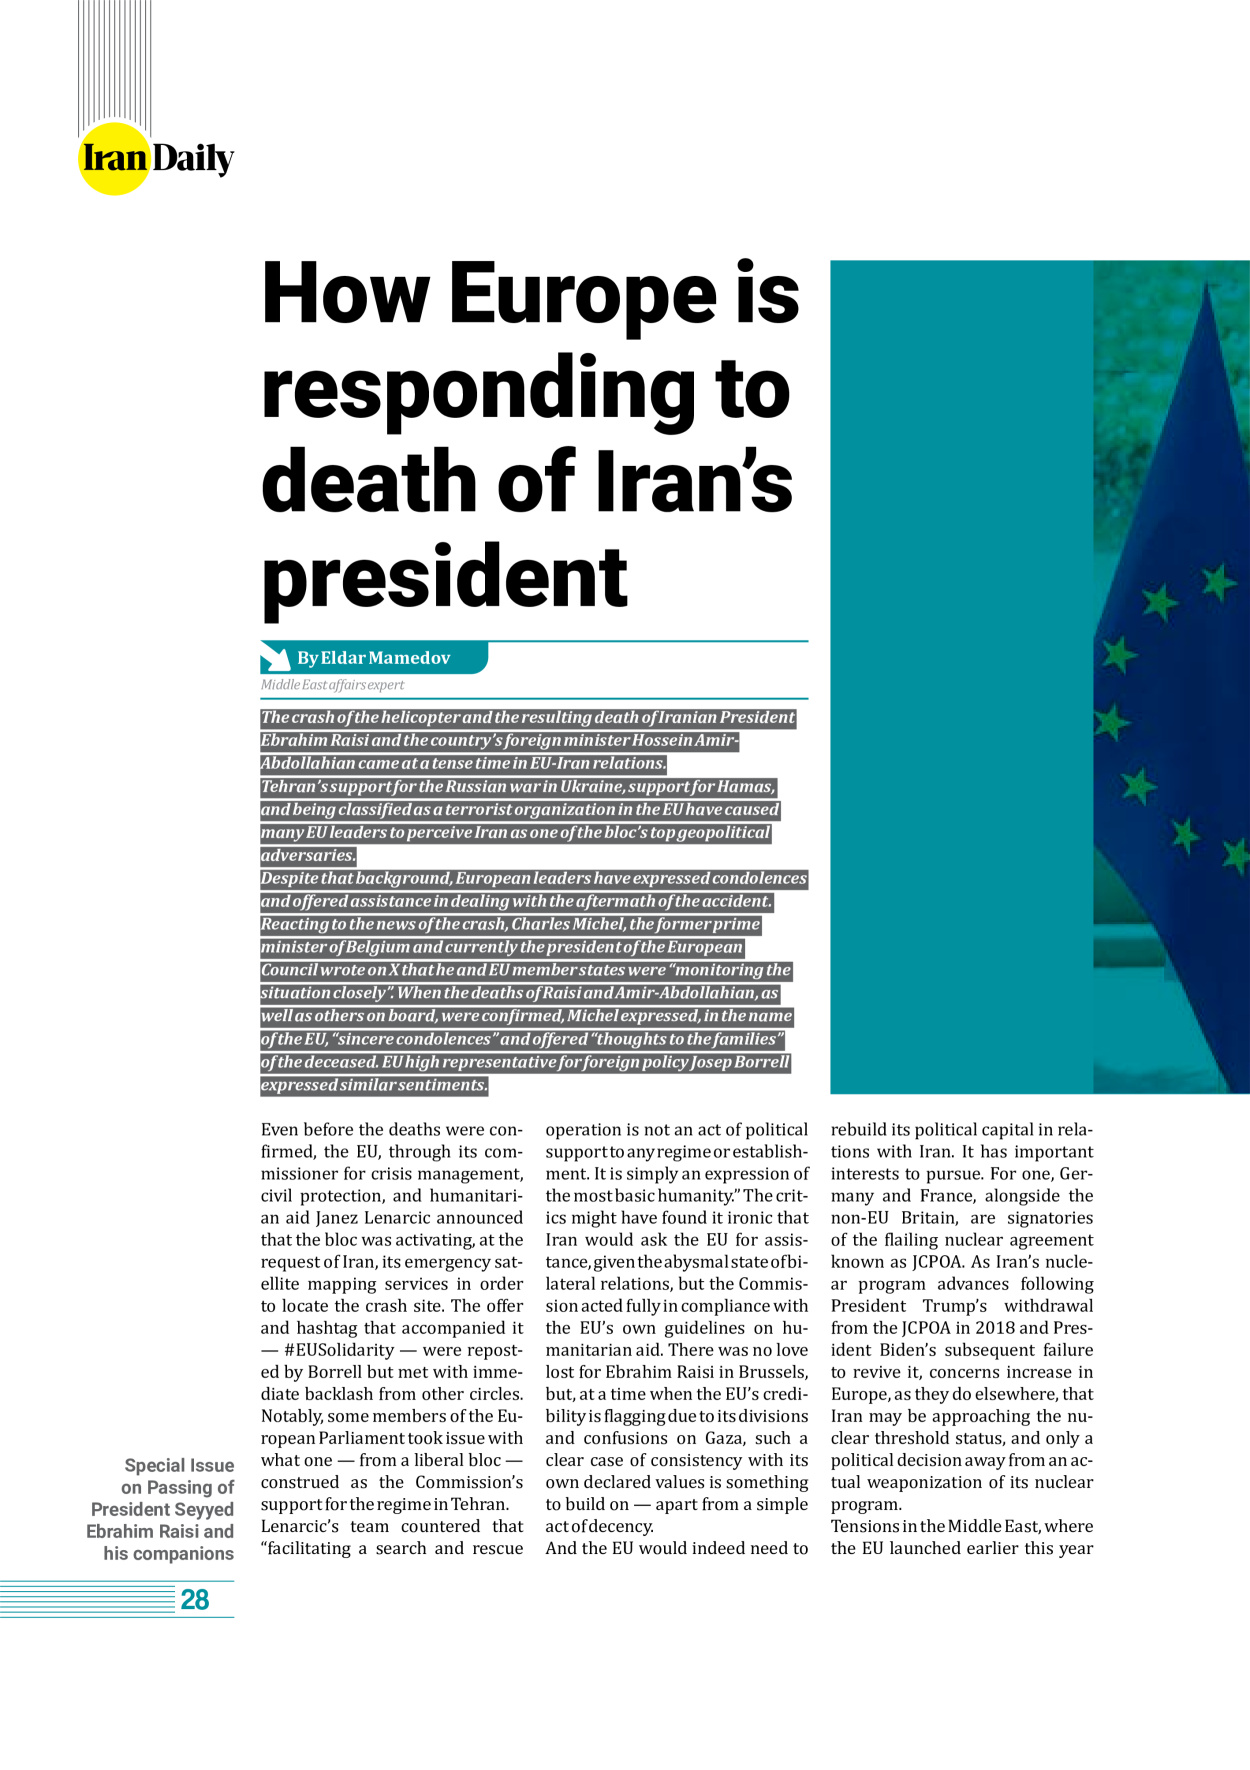 روزنامه ایران - ویژه نامه وِزه نامه چهلم شهید رییسی( انگلیسی) - ۱۷ تیر ۱۴۰۳ - صفحه ۲۸